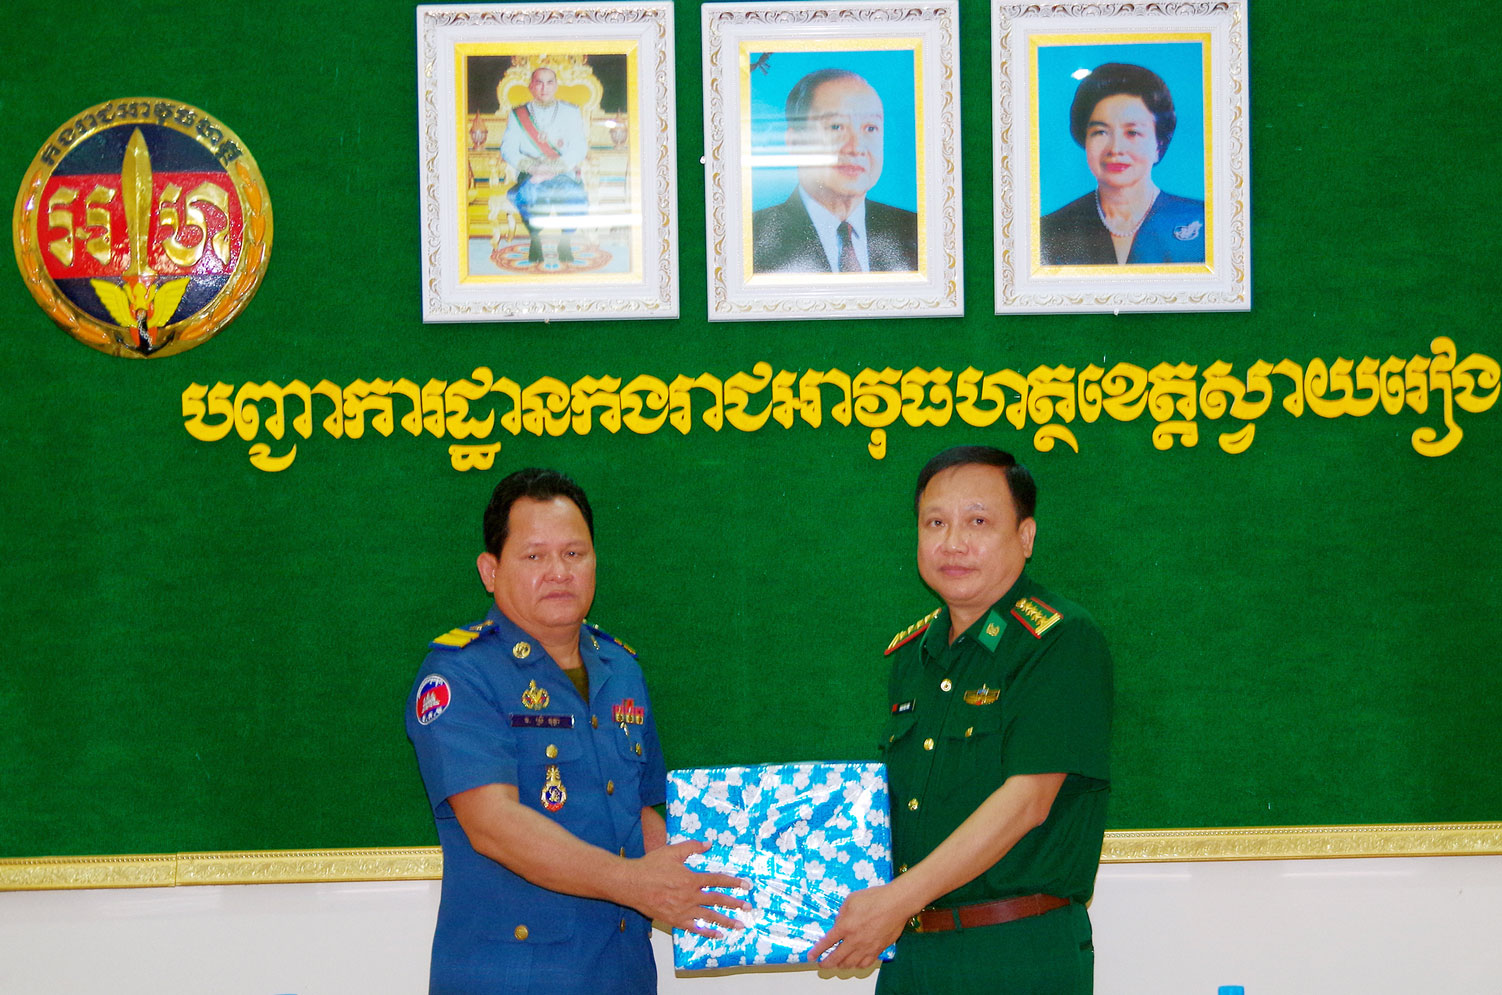 Đại tá Phạm Văn Phúc - Phó Chỉ huy trưởng BĐBP tặng quà lãnh đạo lực lượng Công an, Quân sự và Hiến binh tỉnh Svay Rieng